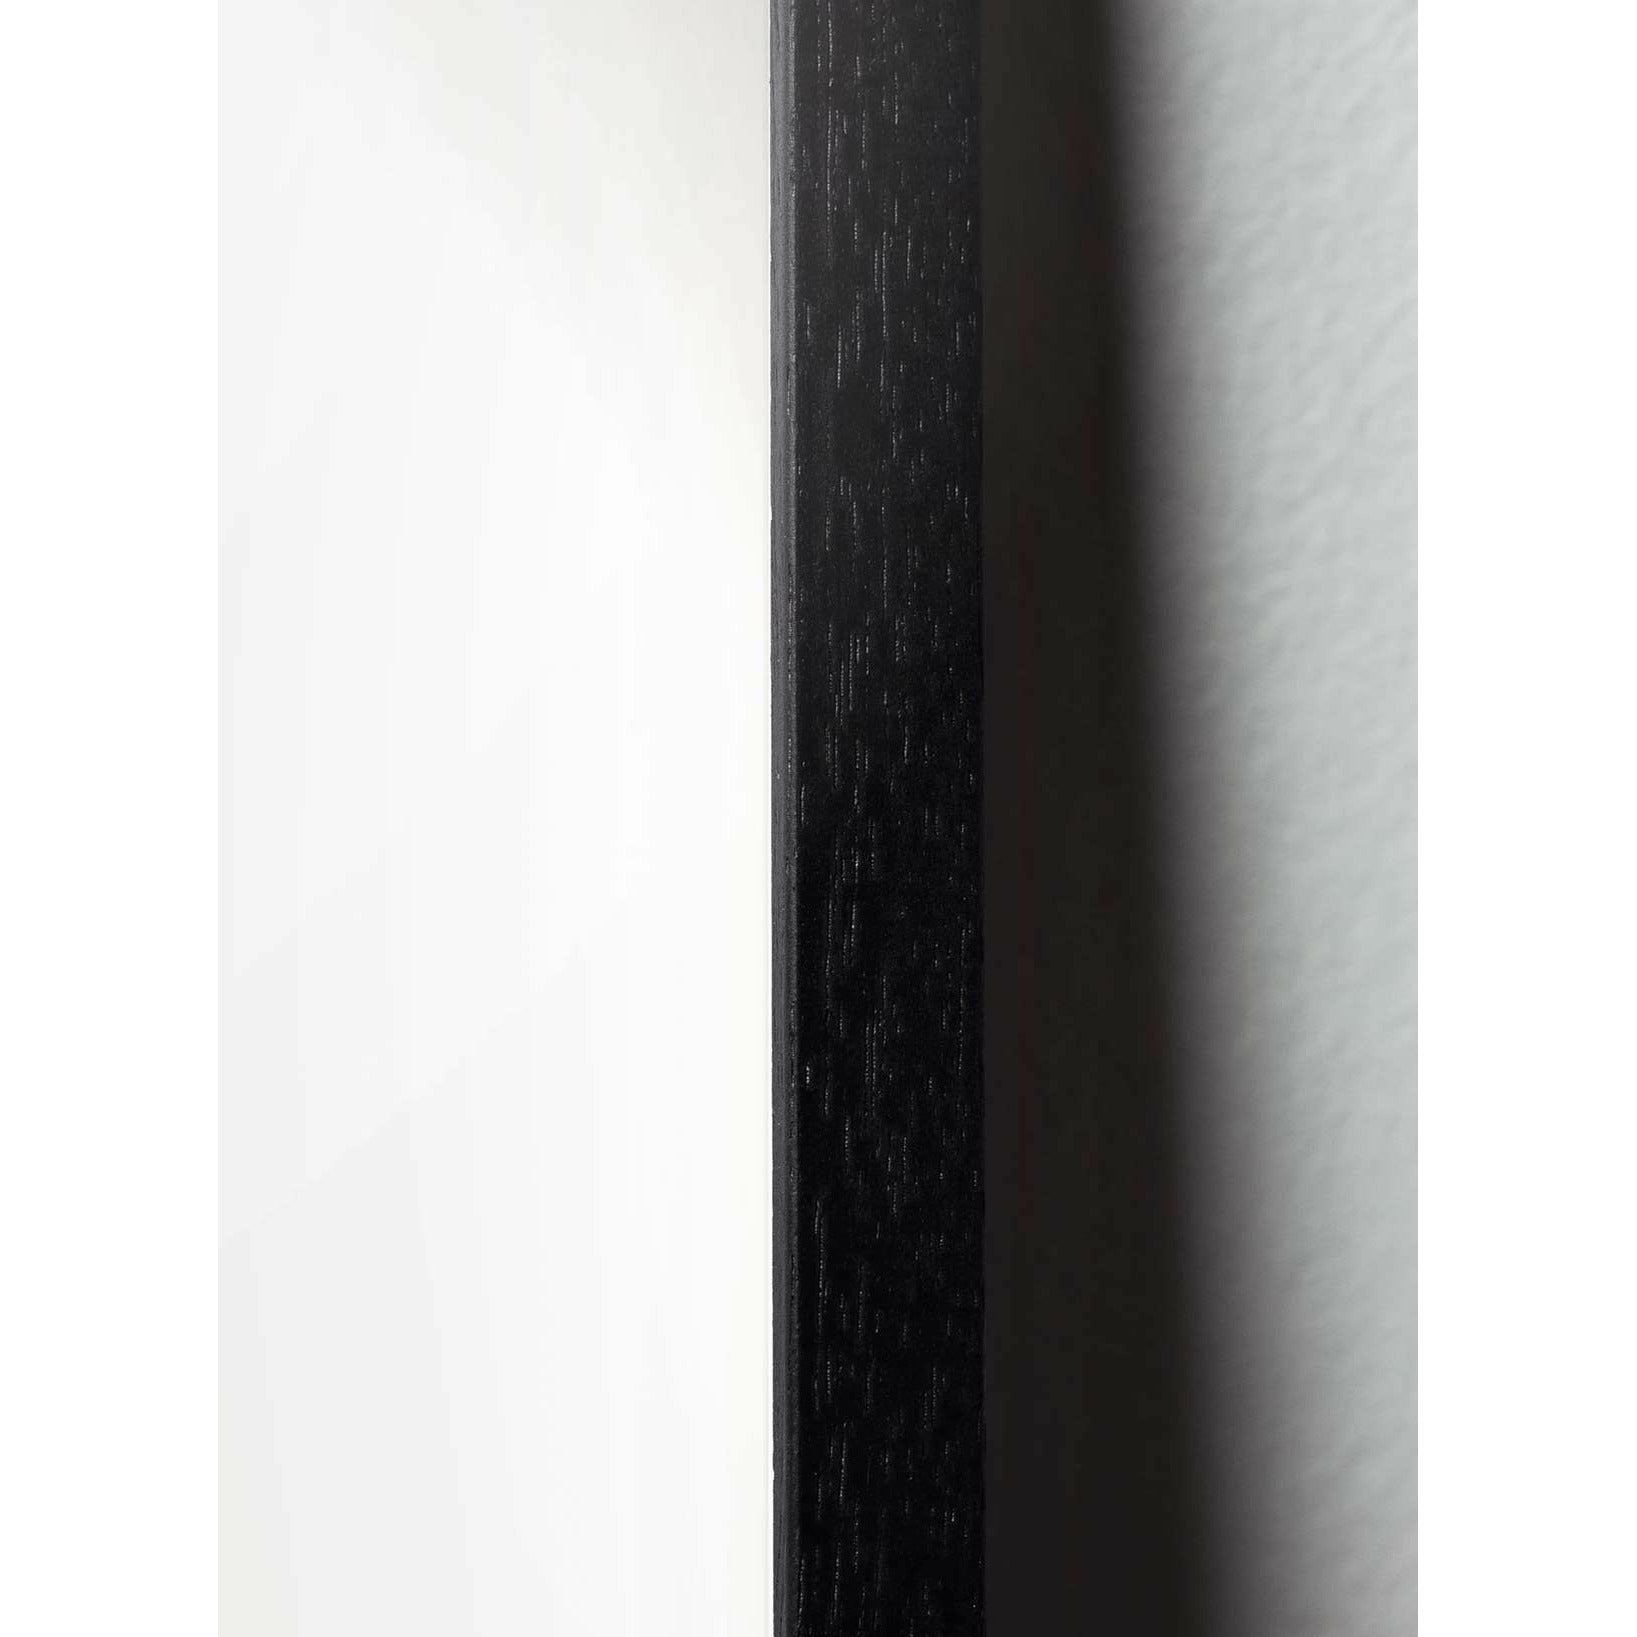 Póster de línea de caída de creación, marco en madera lacada negra A5, fondo blanco